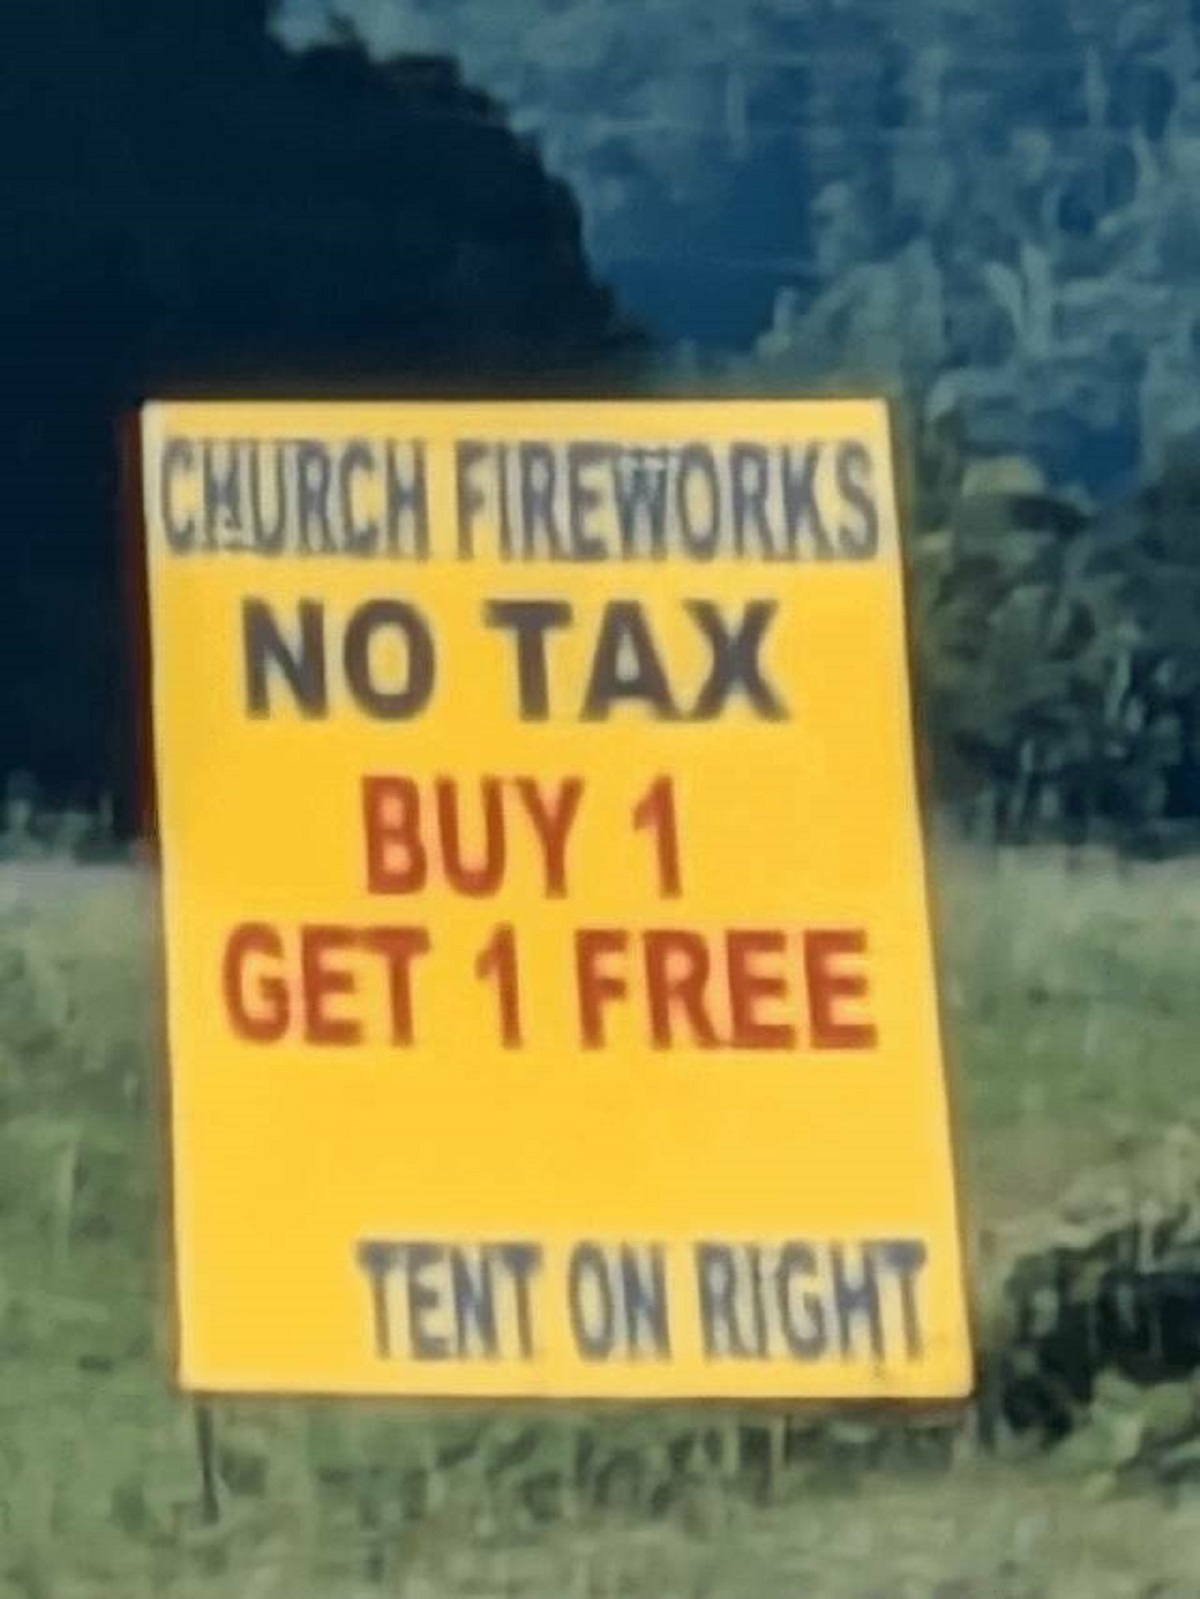 "U.S. church can sell fireworks tax free"